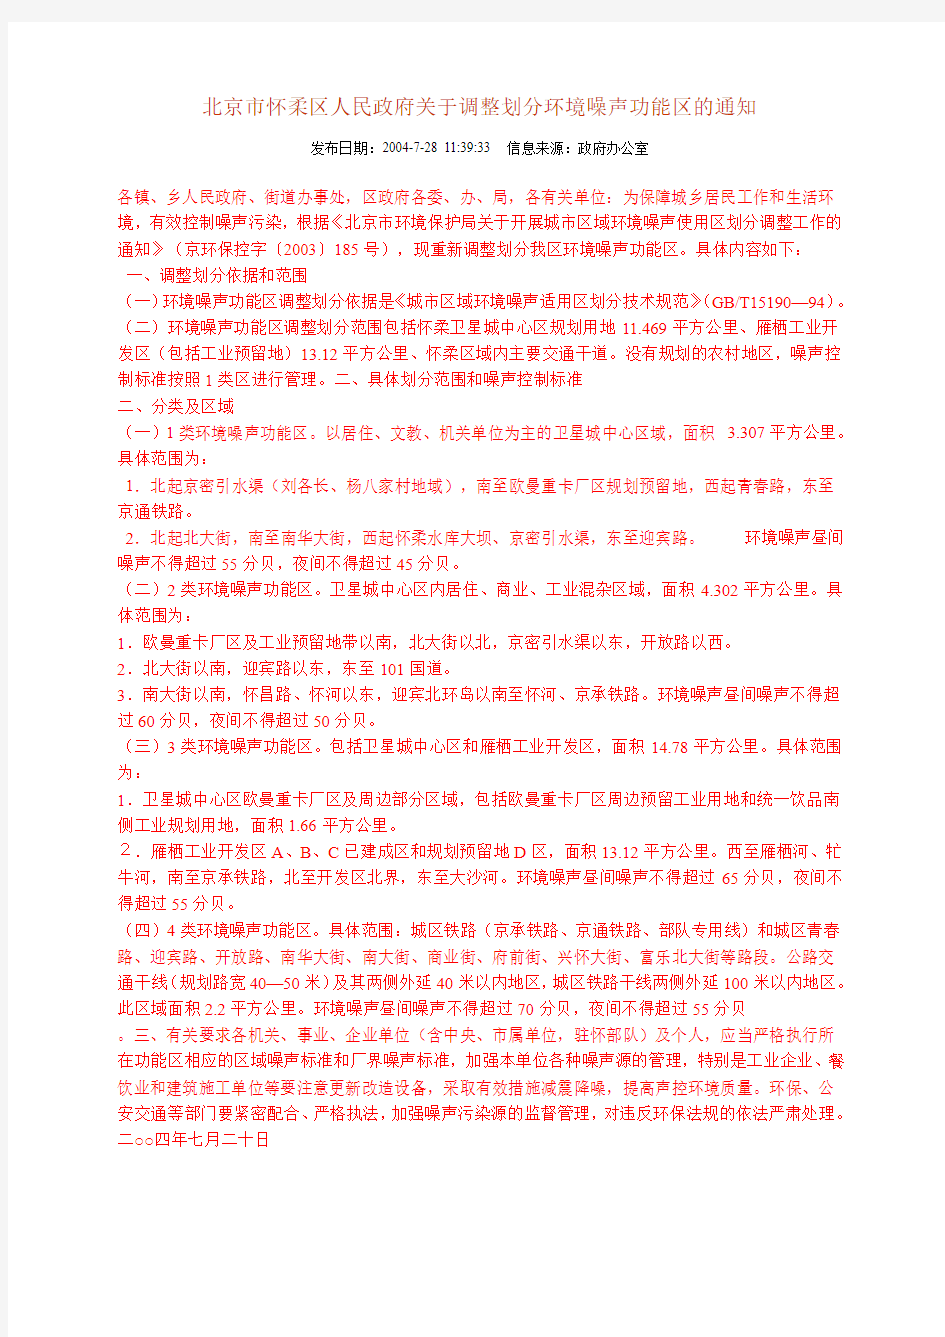 北京市怀柔区人民政府关于调整划分环境噪声功能区的通知